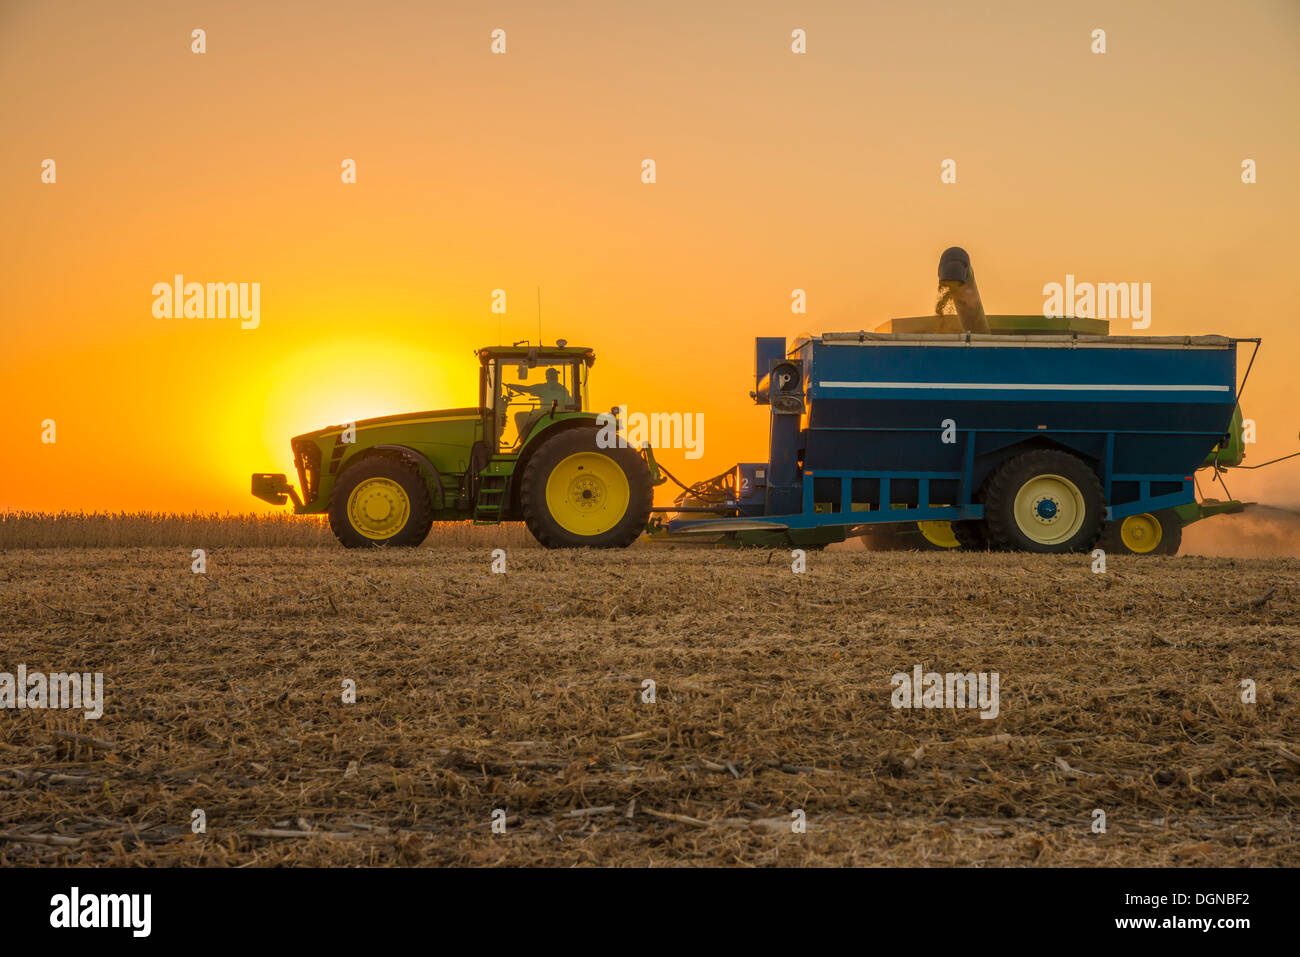 Traktor und Getreide Wagen in einem Soja-Feld, Harvester hinter Getreide Wagen. Stockfoto